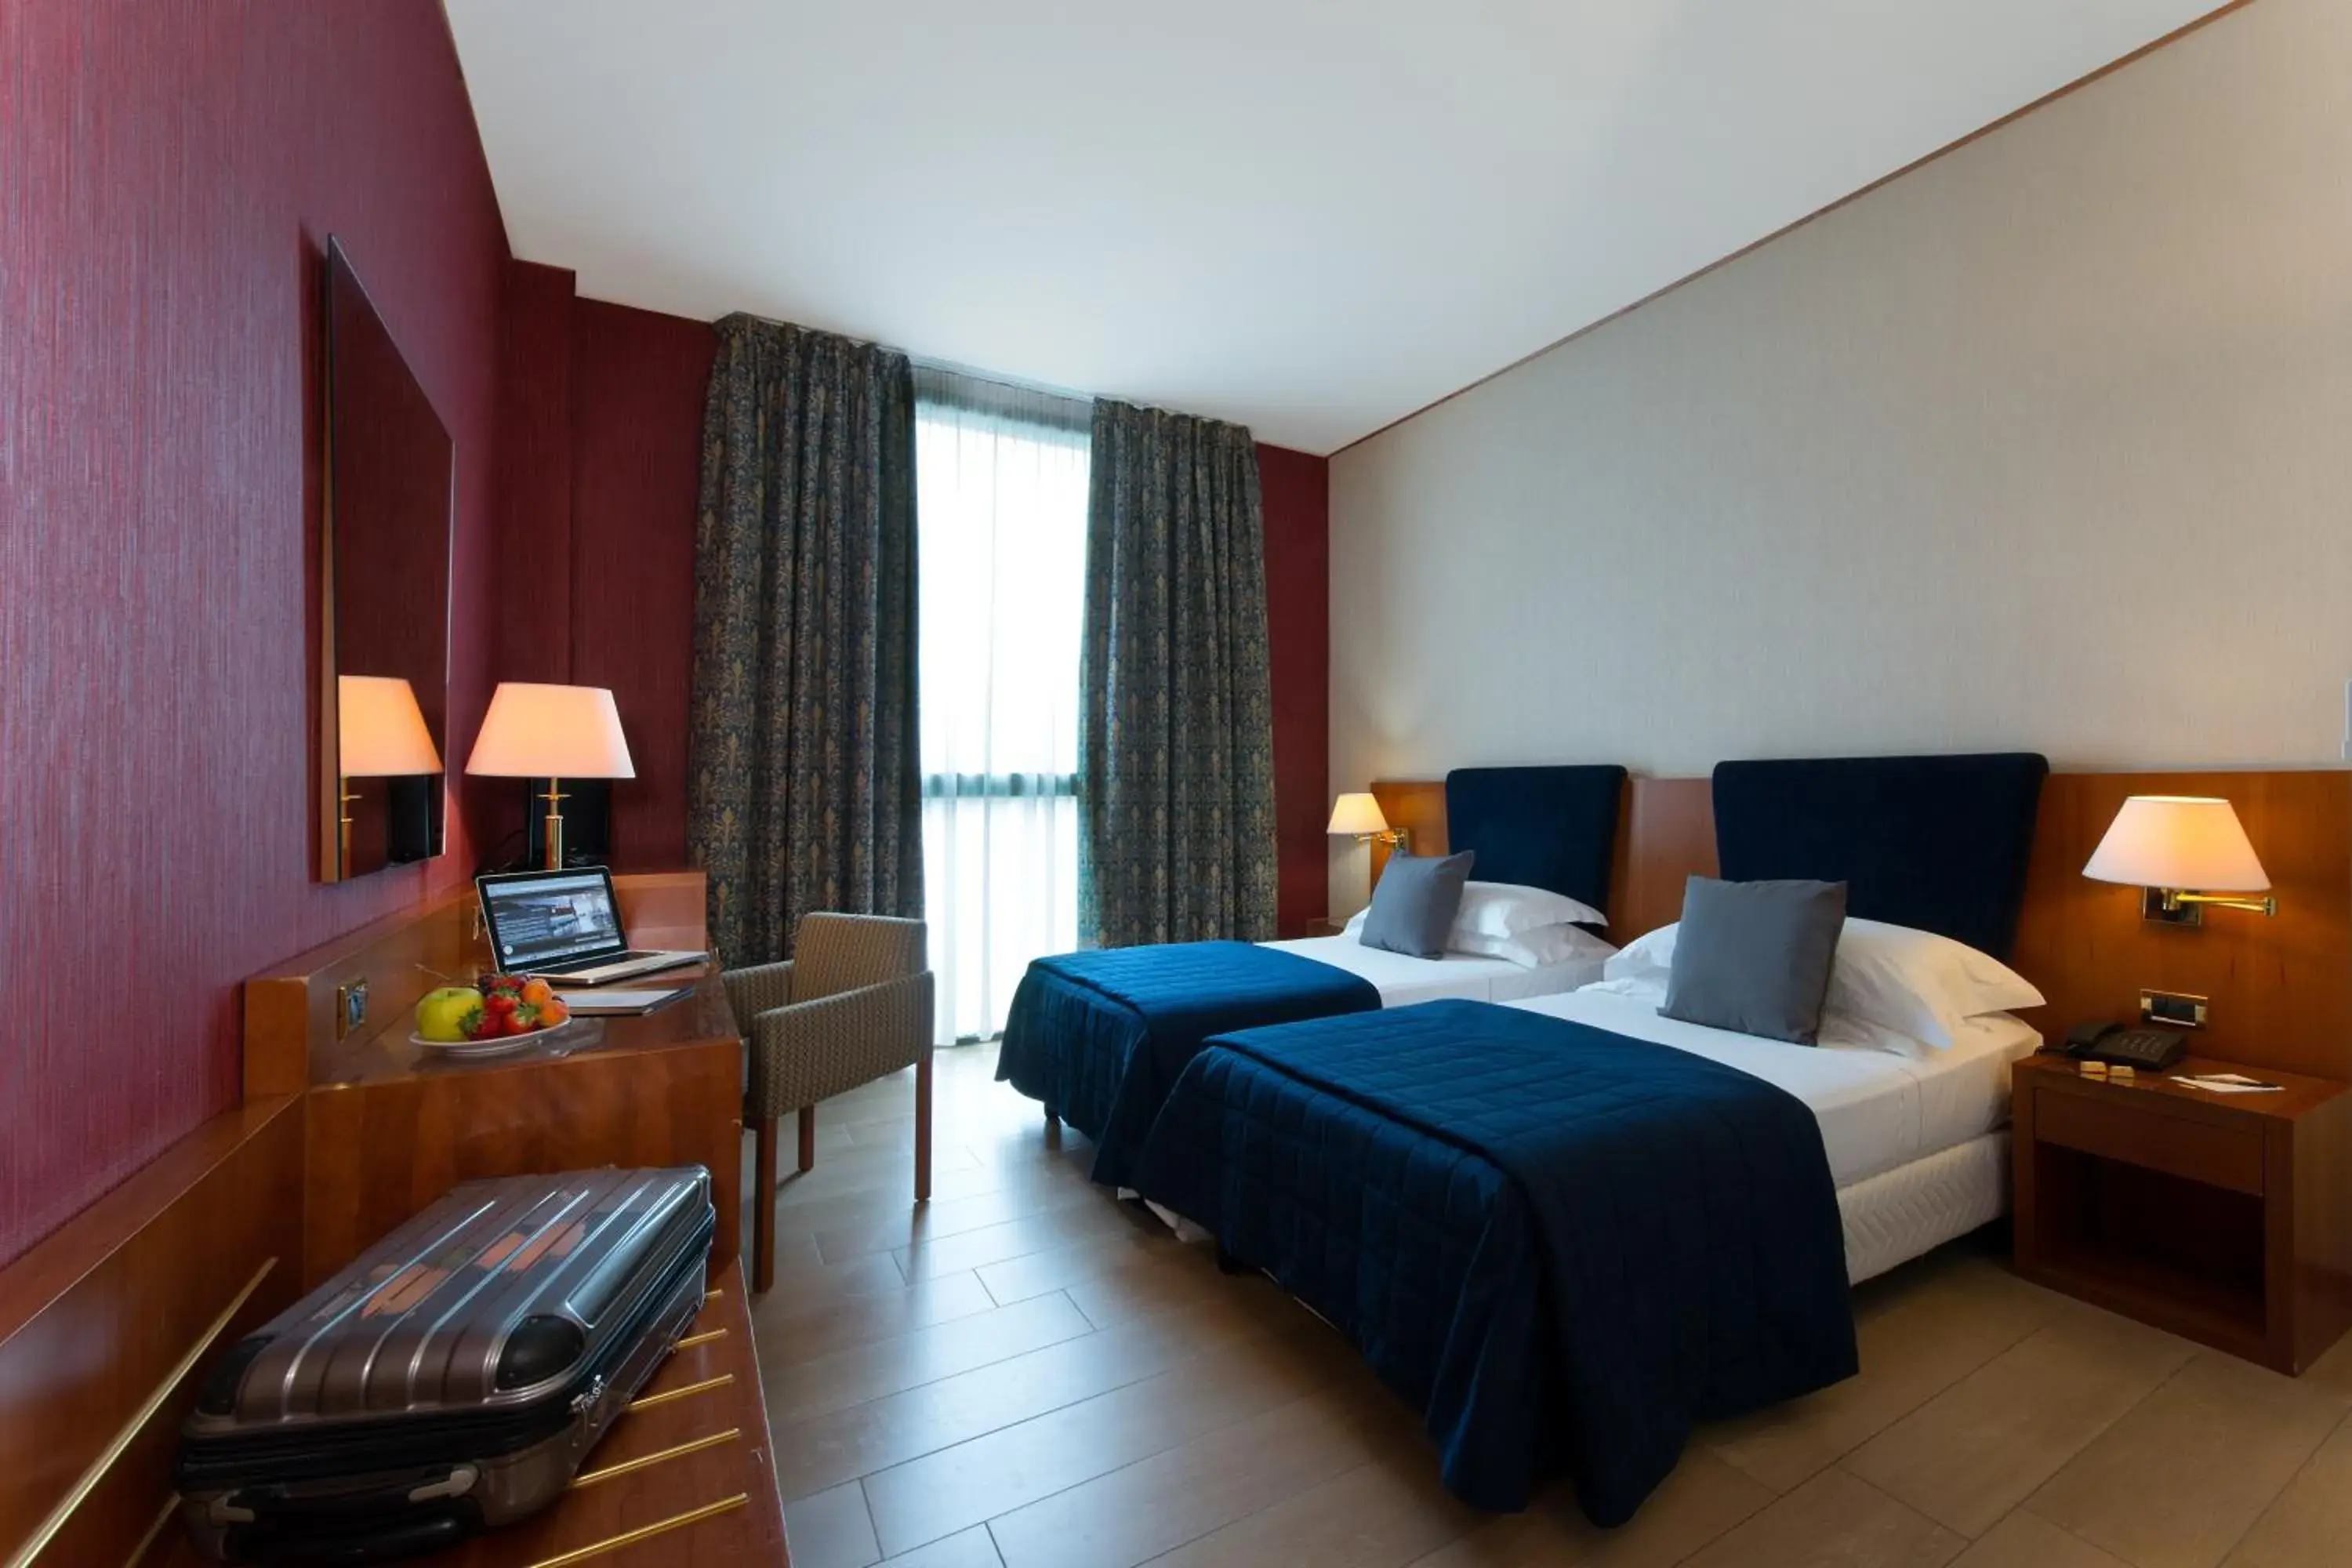 Bedroom in Cdh Hotel Parma & Congressi